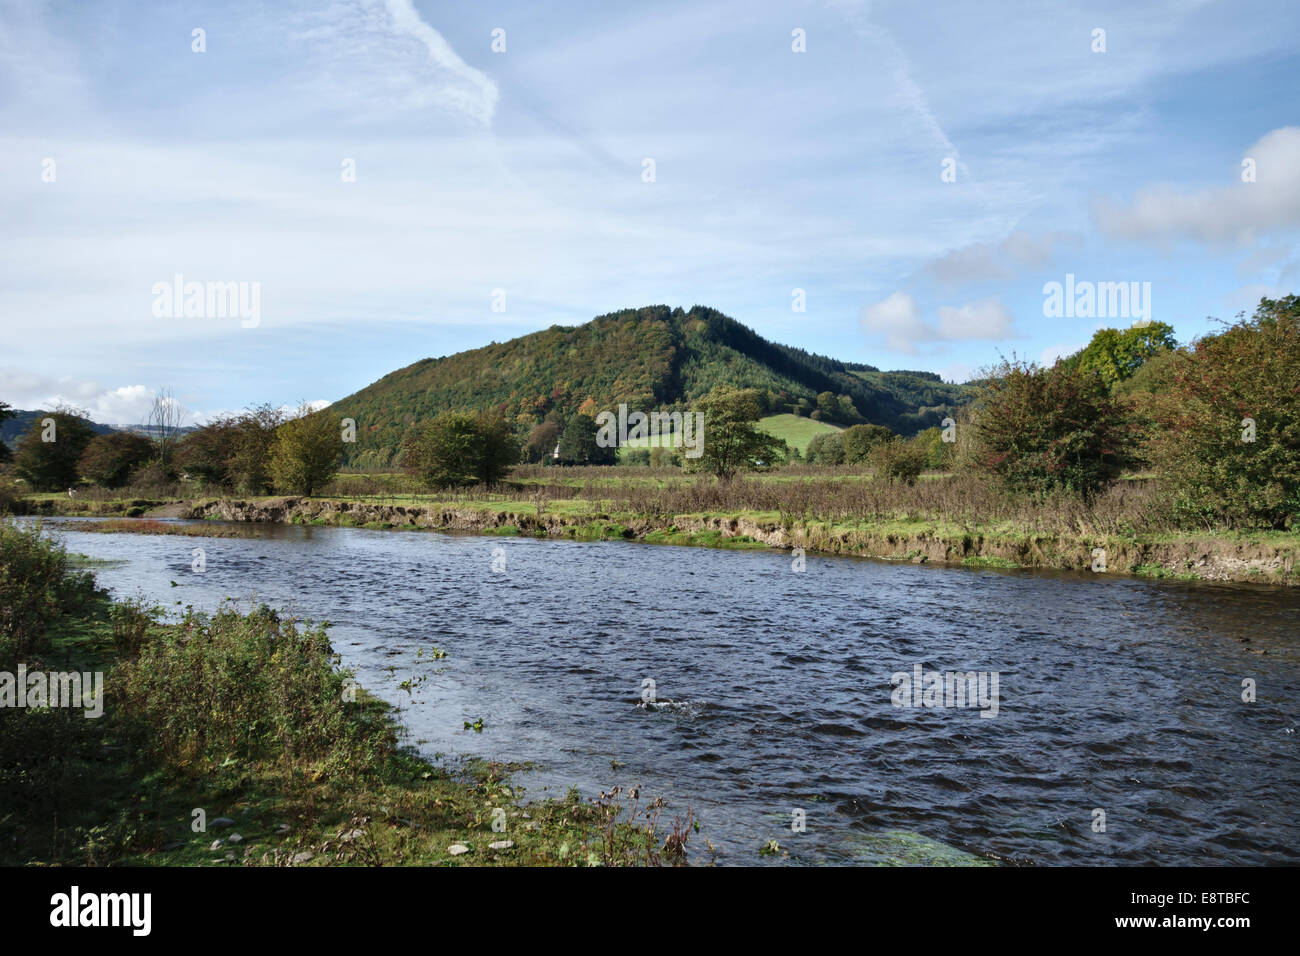 Campagna nei pressi di Knighton, Powys, Regno Unito, dove il fiume tema forma il confine tra Galles (Powys) e Inghilterra (Shropshire) Foto Stock